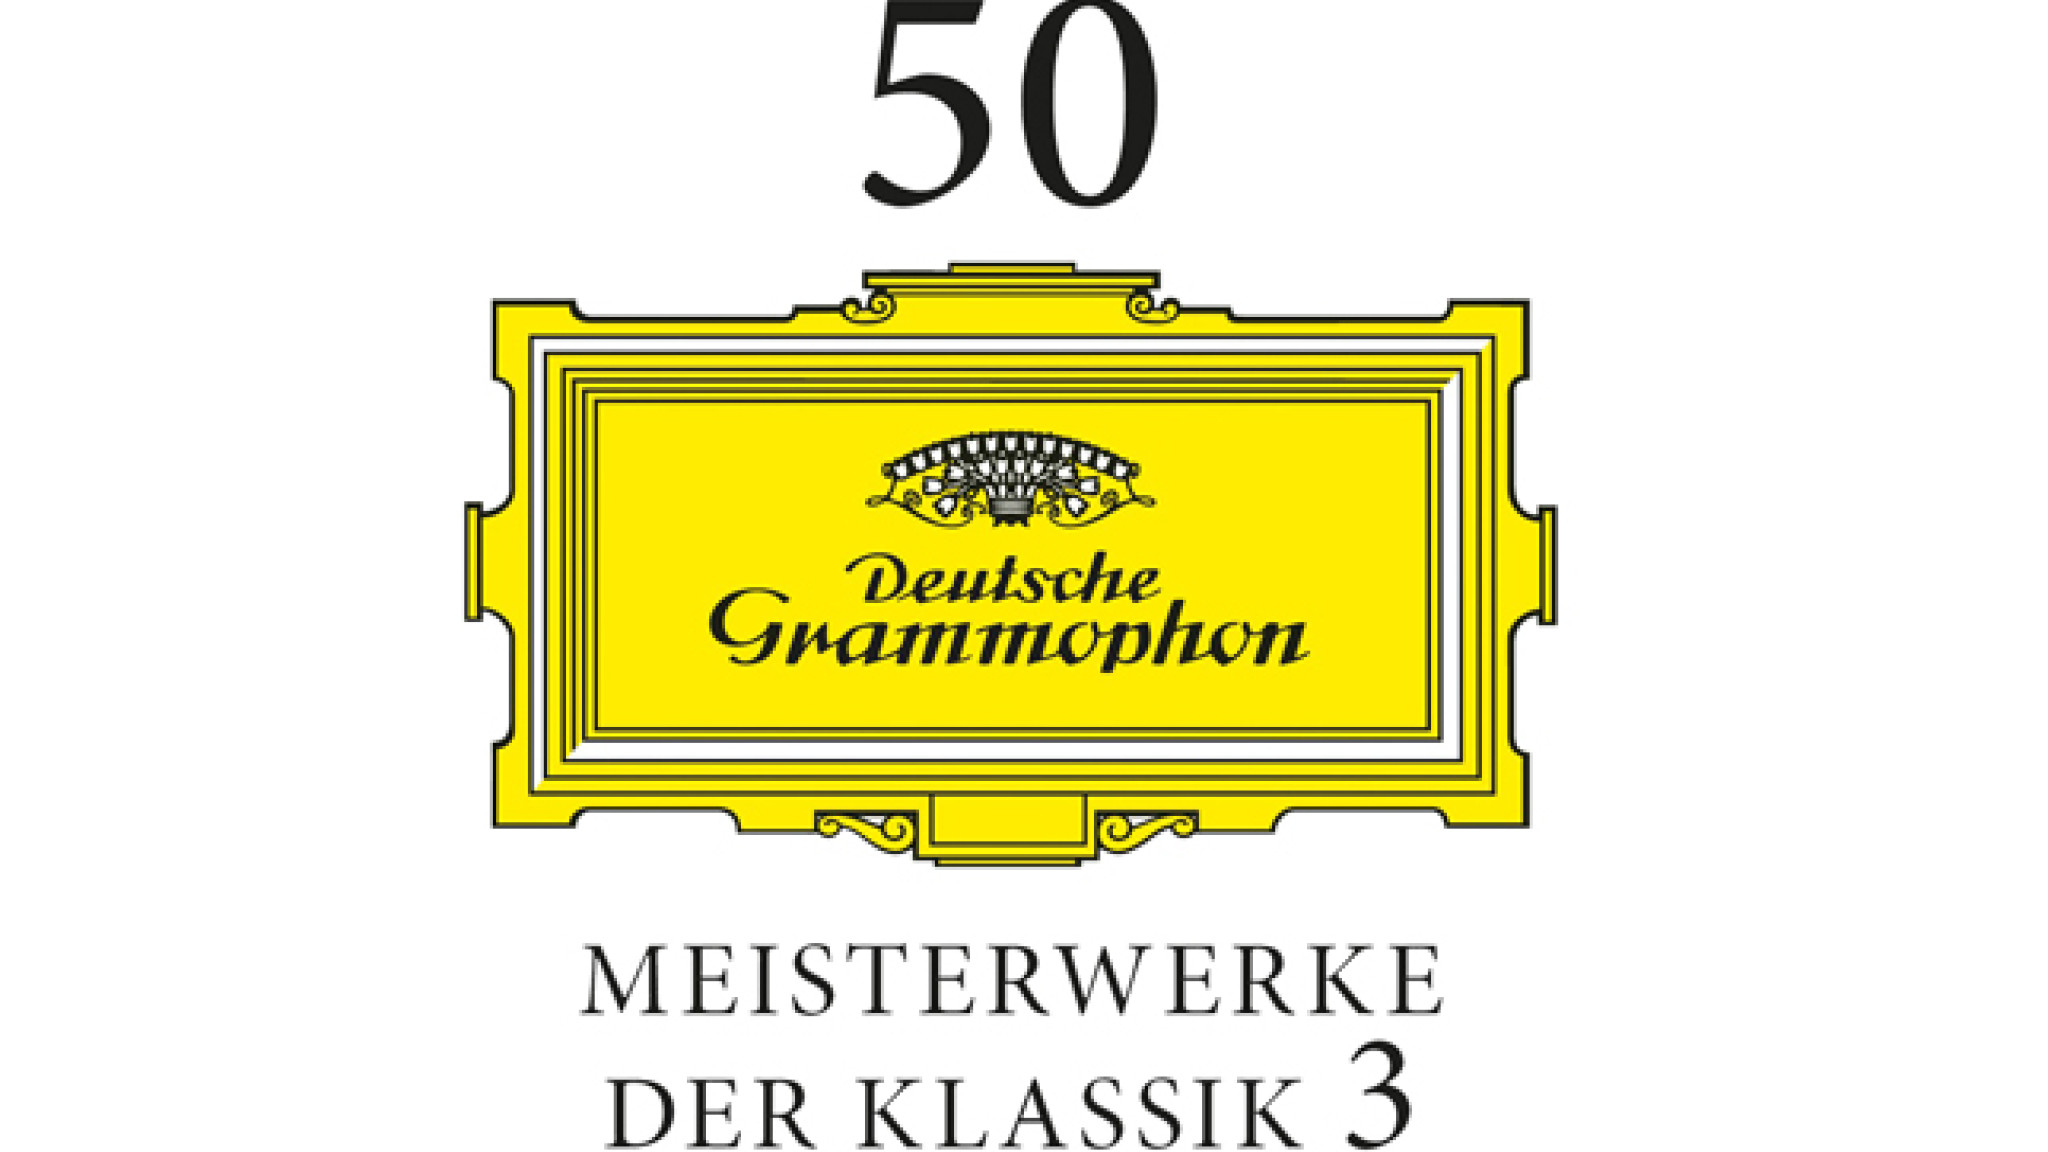 50 Meisterwerke der Klassik Vol. 3